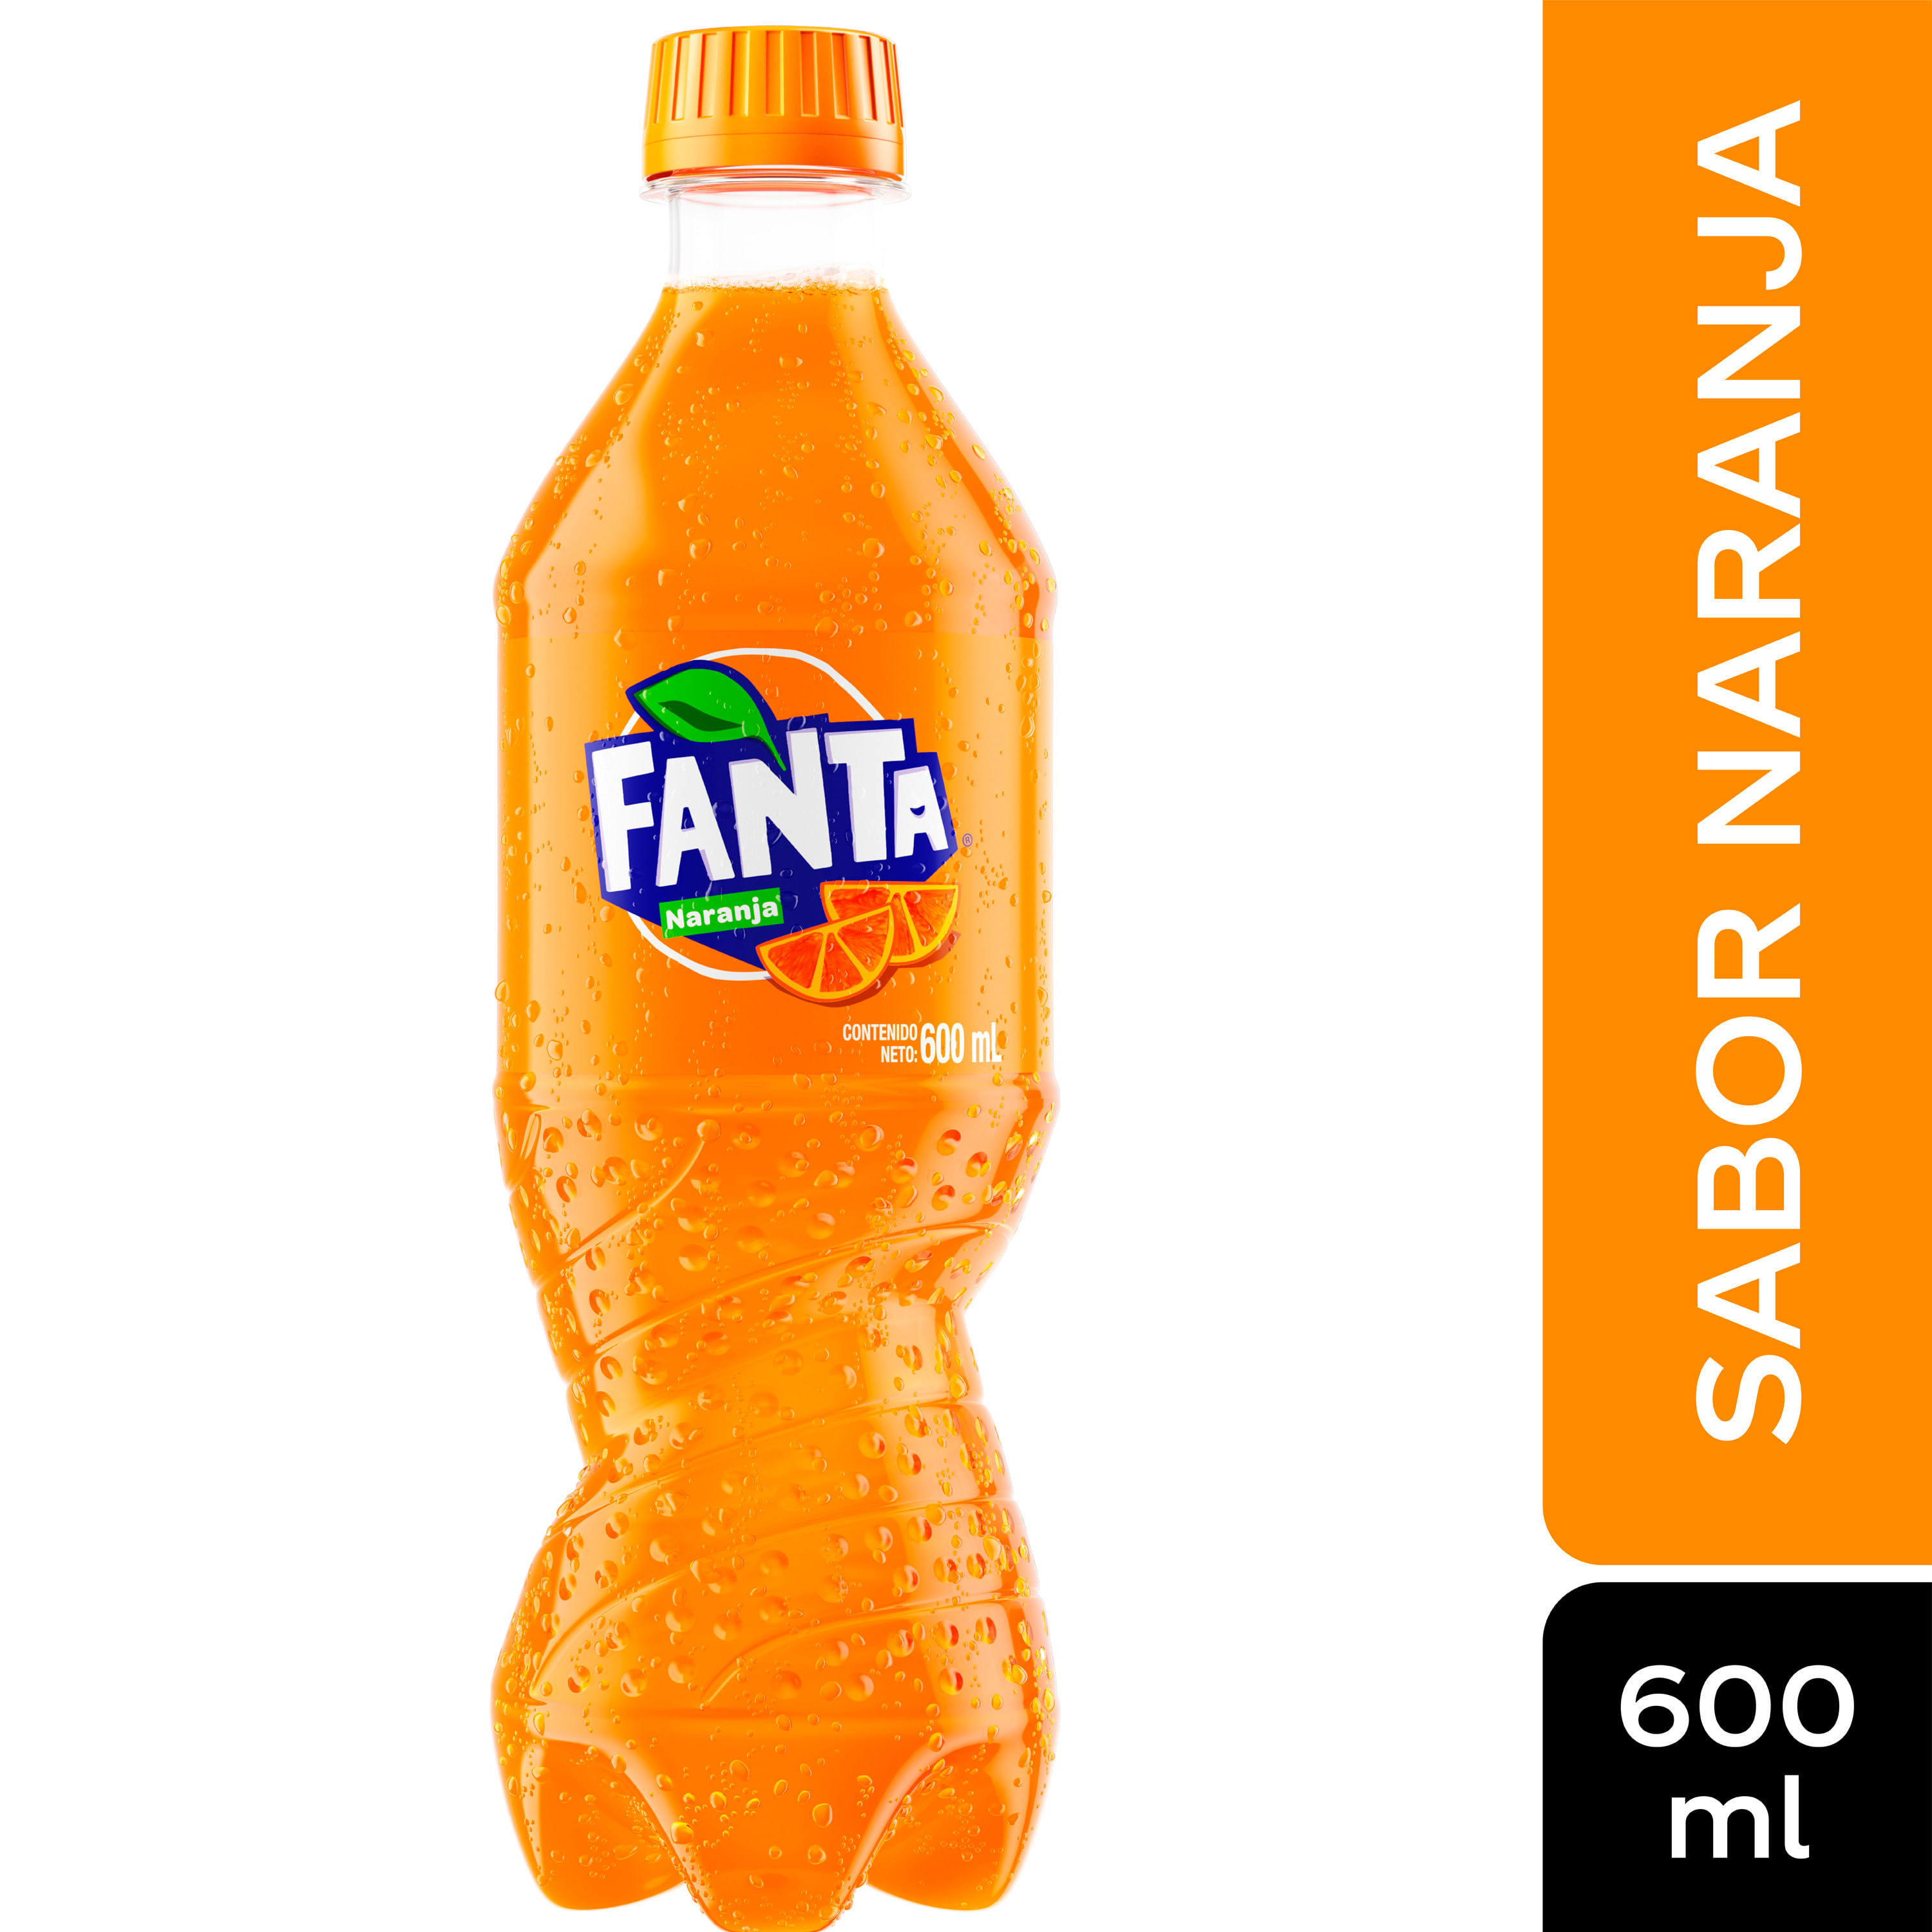 Fanta Naranja, 7.5 fl oz (paquete de 6)